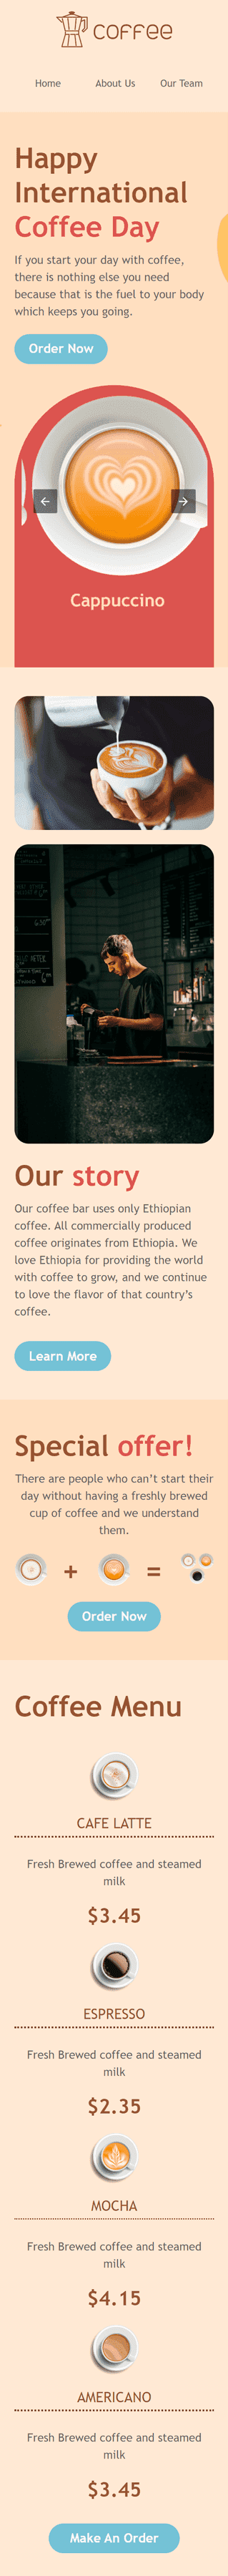 Plantilla de correo electrónico «¡Horas felices!» de Día internacional del café para la industria de Bebidas Vista de móvil